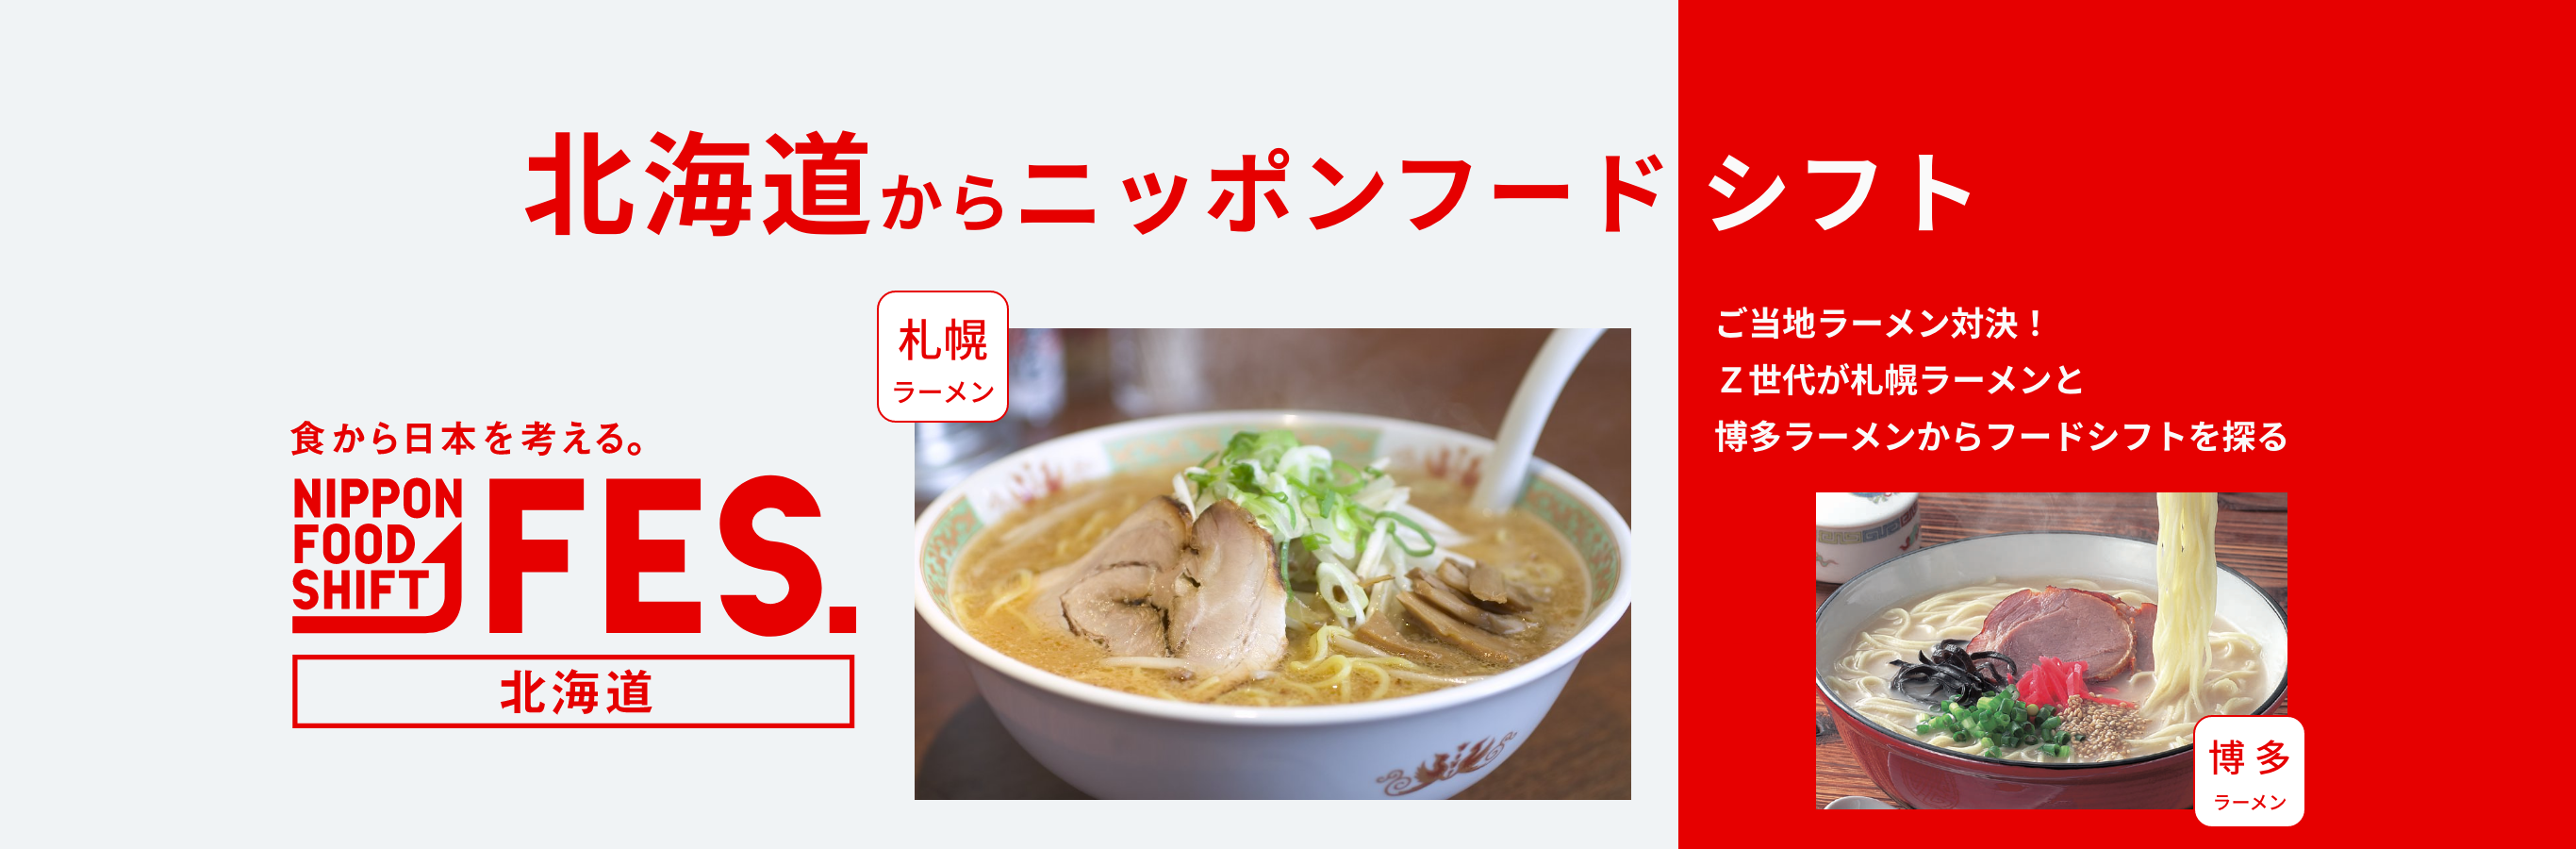 食から日本を考える。NIPPON FOOD SHIFT FES. 北海道からニッポンフードシフト